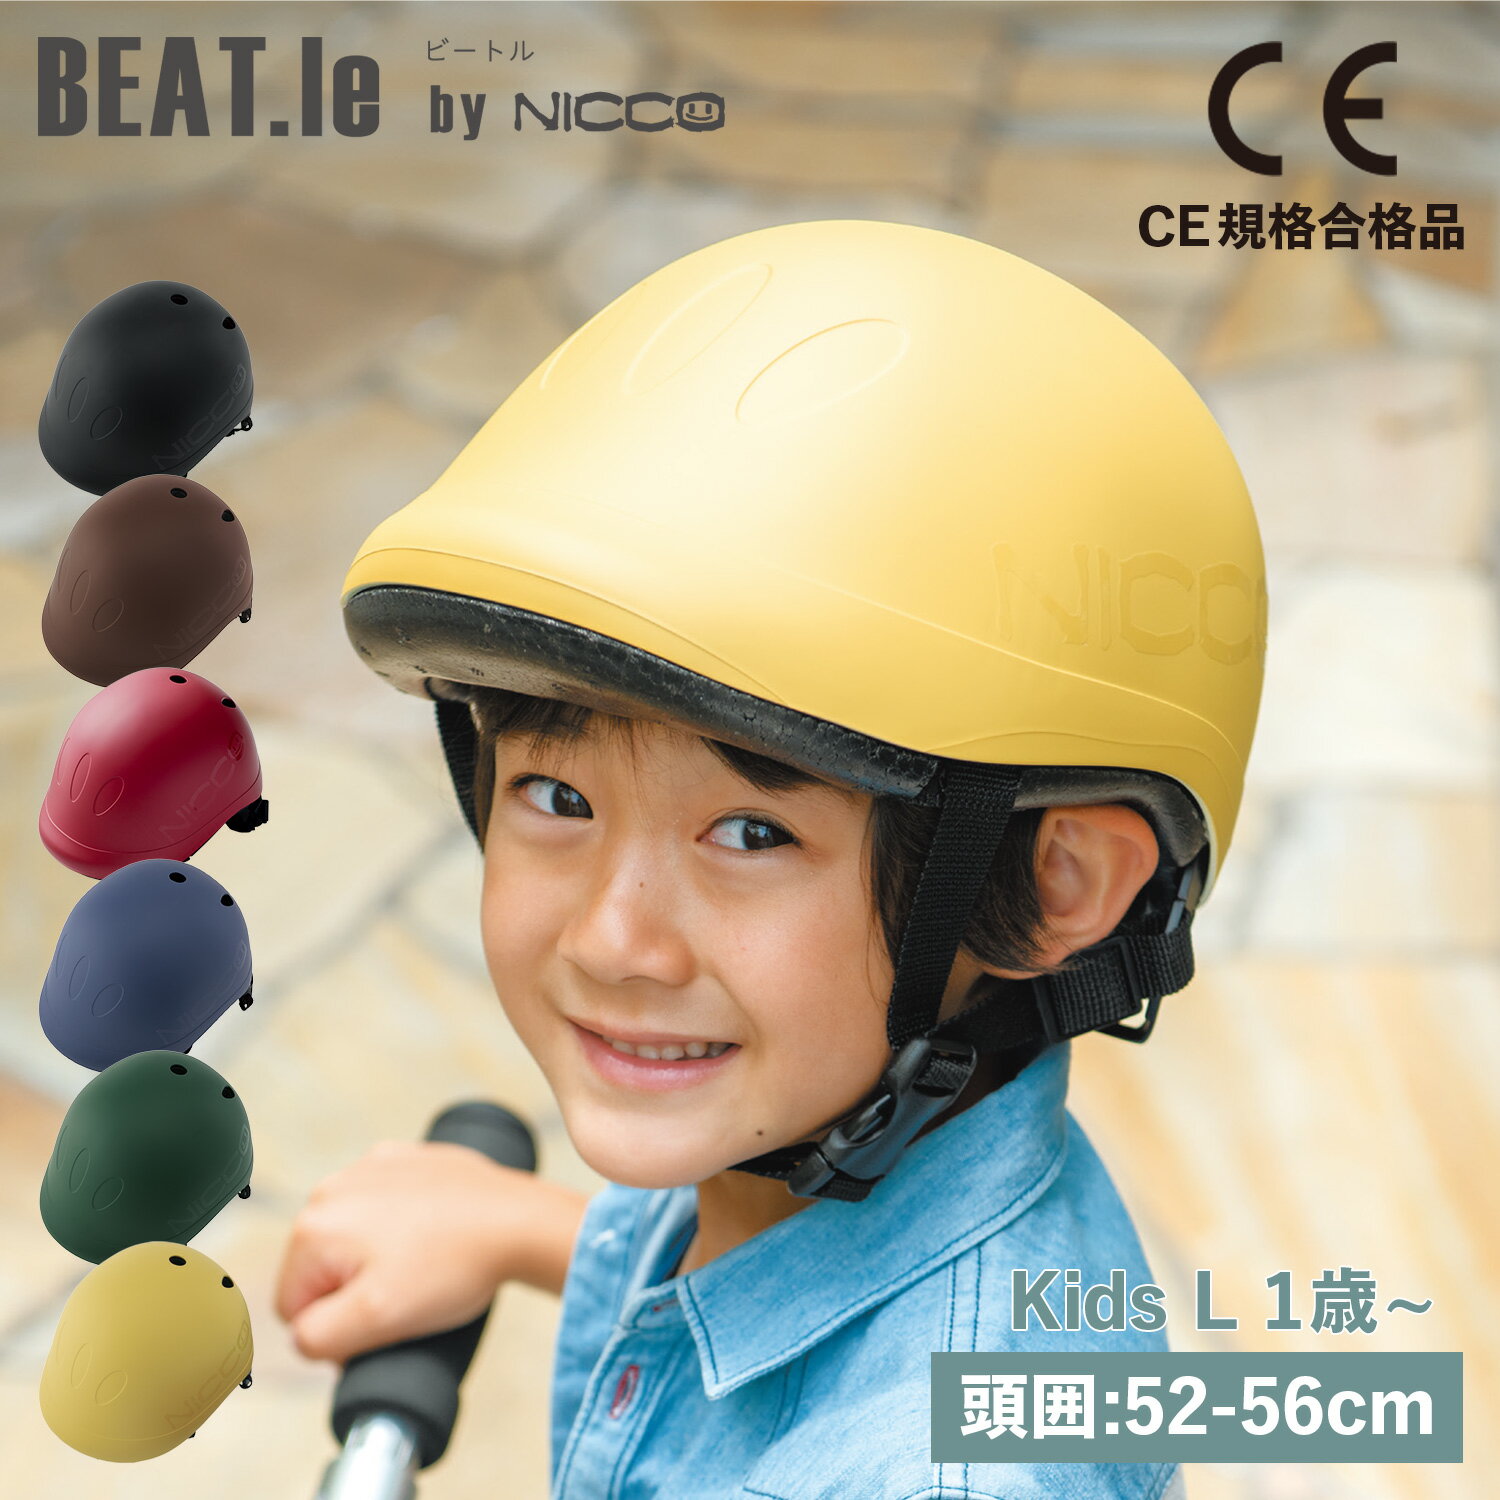 商品説明 【機能性、安全性、デザイン性を兼ね備えた日本製子供用ヘルメットのブランド nicco】 ニコのCE規格合格品である子供用ヘルメットです。安心の日本製で、帽子みたいでおしゃれなお洋服と合わせやすいデザインです。外側のハードシェルには、衝撃耐性が最高グレードのABS樹脂、内側のライナーには複合発泡素材を使用しており、子供の柔らかい頭を衝撃から守ります。サイズはダイヤルを回すだけで調節可能なため、朝の忙しい時間でも楽に調整できます。ヘルメット後方部分には反射シールが付いており、日が暮れてからのお迎えも安心。内側のフロントパットは取り外して水洗いが可能なため、清潔な状態を保てます。 ブランド名 / 商品名 nicco ニコ / KM001L カラー マットブラック マットブラウン マットレッド マットブルー マットグリーン マットマスタード 素材 / 仕様 外側：ABS樹脂(超高耐衝撃性グレード) 内側：ポリエチレン・ポリエチレン(複合発泡ライナー) 重量：450g CE規格合格品 保証期間 1年 生産国 JAPAN サイズ 頭囲：52-56cm こちらの商品は、メーカー公式の採寸基準で計測しています。 ご購入前に必ずお読みください サイズ・仕様について 平置きして採寸したサイズになります。商品によっては若干の誤差が生じてしまう場合がございます。また、商品やブランド等によりサイズが異なります。（単位はcmになります。） カラーについて 個体ごとに若干の誤差がある場合がございます。商品の画像は、できるだけ商品に近いカラーにて、掲載をしております。 お客様のモニターの設定により、色味に違いが発生してしまう場合もございます。あらかじめご了承ください。 予約商品の納期発送目安について 予約商品の納期発送目安は、以下の通りになります。 上旬：1日-10日頃発送予定 中旬：11日-20日頃発送予定 下旬：21日-末日頃発送予定 ※目安になりますので、日程が多少前後する場合があります。 保証書について 商品には「保証書」があるものがございます。配送作業の関係上「保証書」には。販売店名・販売日の記載がございません。「受注番号の記載されたご注文時のメール」が購入証明となりますので、「保証書」と「メールの控え」を必ず保管して下さい。 類似商品はこちらnicco ニコ ヘルメット 自転車 子供用 6,380円nicco ニコ ヘルメット 自転車 子供用 5,940円nicco ニコ ヘルメット 自転車 子供用 5,940円nicco ニコ ヘルメット 自転車 子供用 5,940円nicco ニコ ヘルメット 自転車 子供用 5,940円Bobike ボバイク ワン プラス ヘルメッ5,940円Bobike ボバイク ワン プラス ヘルメッ5,940円Bobike ボバイク ヘルメット 自転車 子5,830円Bobike ボバイク ヘルメット 自転車 子5,830円新着商品はこちら2024/5/18VANS SLIP-ON MULE TRK ヴ7,600円2024/5/18MERRELL JUNGLE MOC 2.0 16,632円2024/5/18MERRELL JUNGLE MOC 2.0 16,632円再販商品はこちら2024/5/18PUMA PlayStation SUEDE 14,300円2024/5/18ナイキ NIKE エアジョーダン1 ロー スニ16,500円2024/5/18PUMA MAYZE BLANK CANVAS9,400円2024/05/18 更新 類似商品はこちらnicco ニコ ヘルメット 自転車 子供用 6,380円nicco ニコ ヘルメット 自転車 子供用 5,940円nicco ニコ ヘルメット 自転車 子供用 5,940円新着商品はこちら2024/5/18VANS SLIP-ON MULE TRK ヴ7,600円2024/5/18MERRELL JUNGLE MOC 2.0 16,632円2024/5/18MERRELL JUNGLE MOC 2.0 16,632円再販商品はこちら2024/5/18PUMA PlayStation SUEDE 14,300円2024/5/18ナイキ NIKE エアジョーダン1 ロー スニ16,500円2024/5/18PUMA MAYZE BLANK CANVAS9,400円